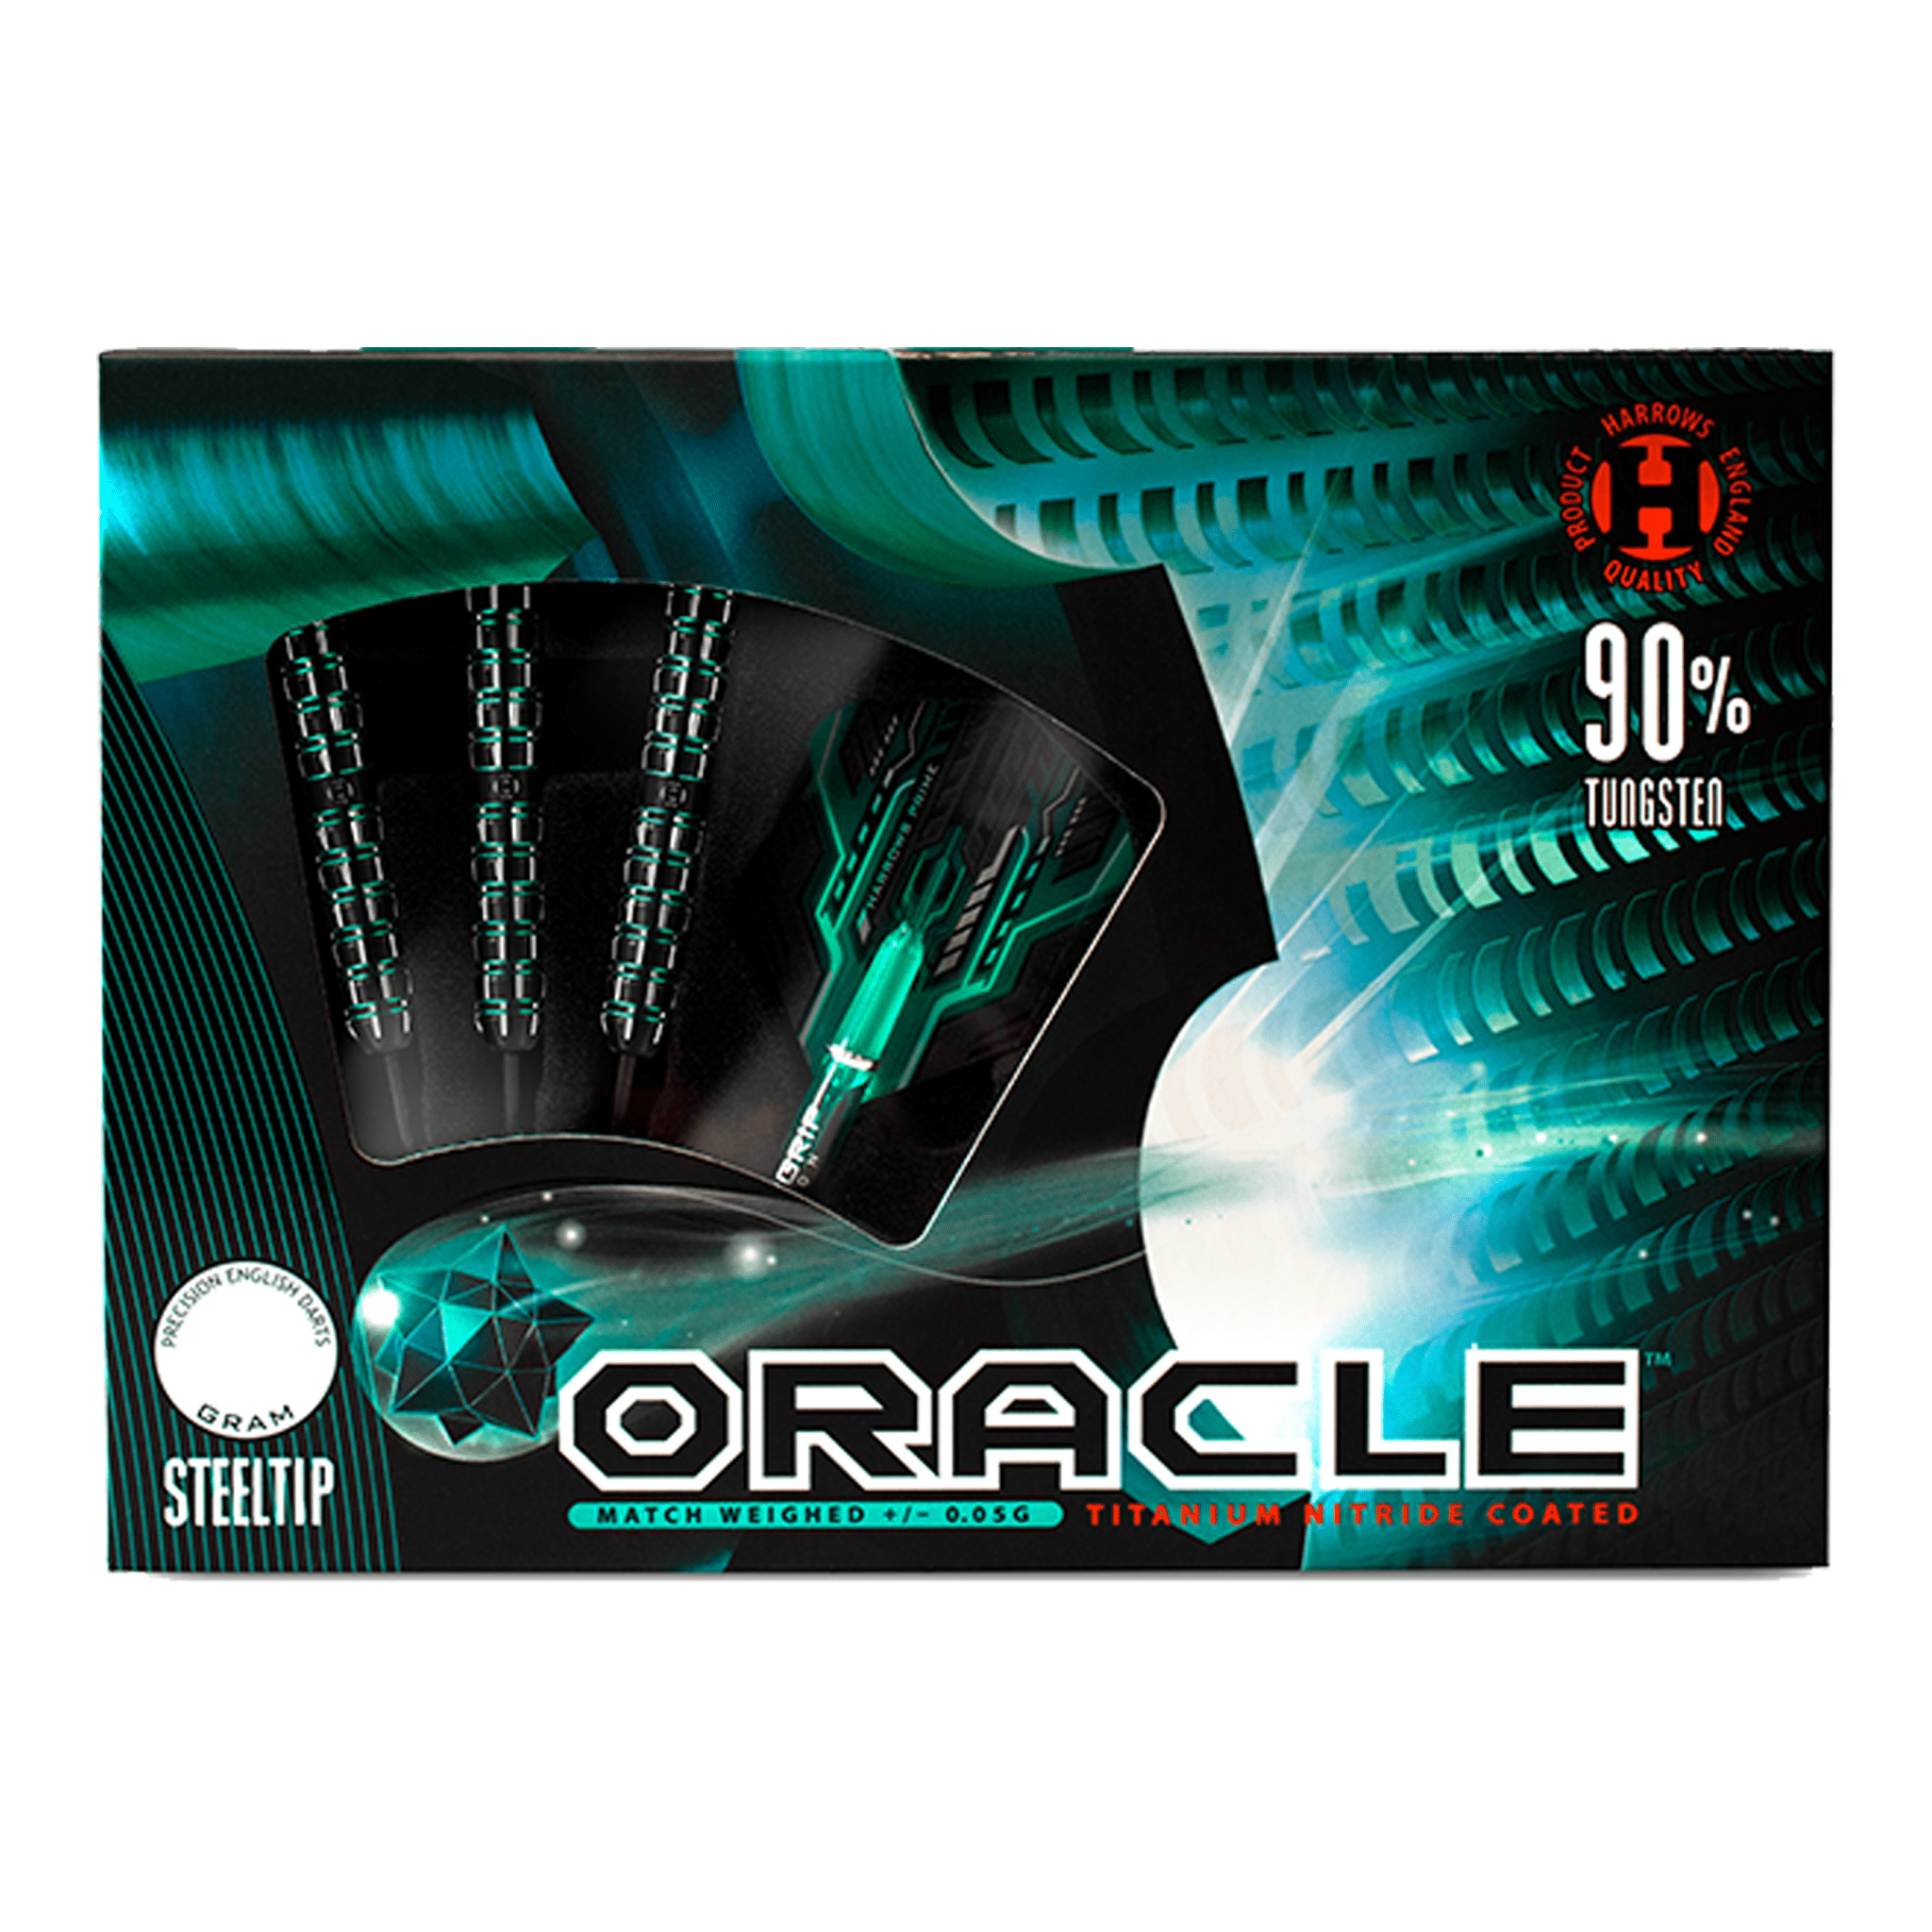 Harrows Oracle Steel Tip Darts - 90% Tungsten - 22 Grams Darts